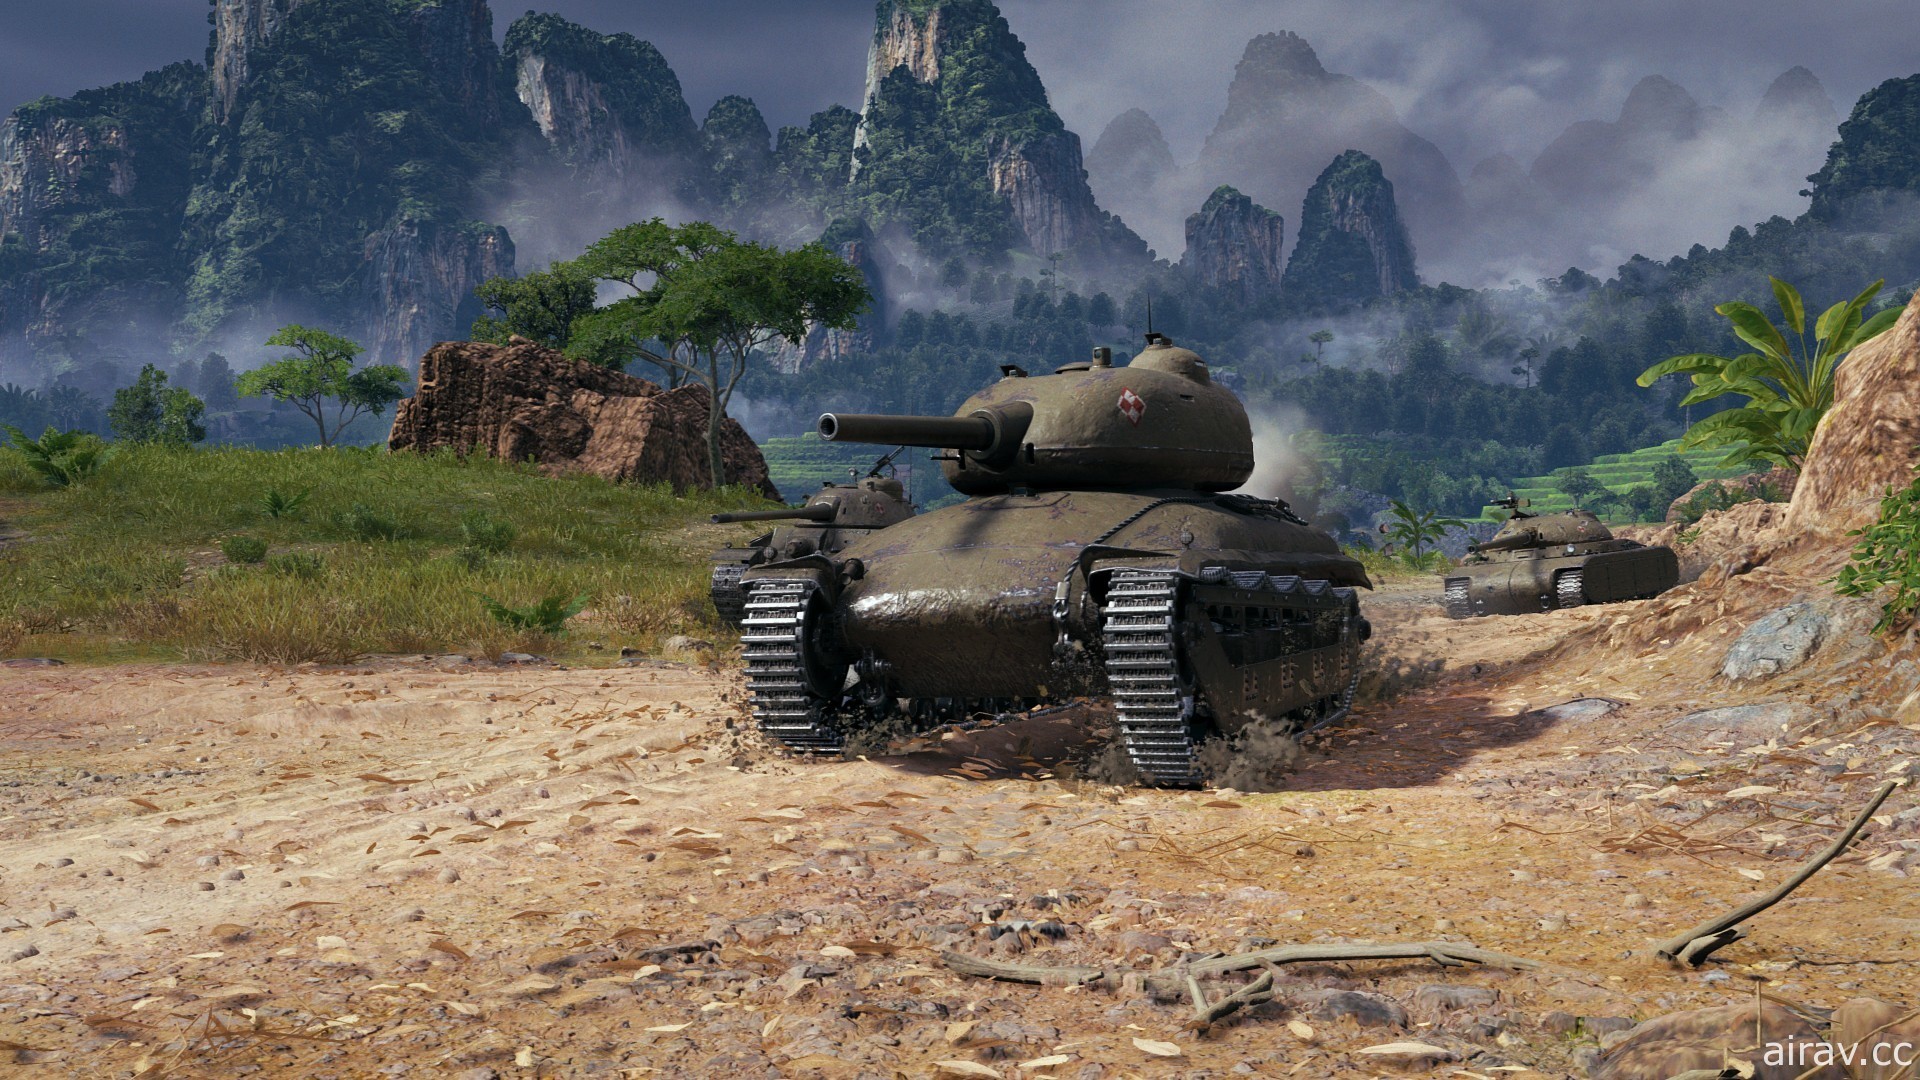 《戰車世界》1.10 版本上線 開放裝備 2.0 與新波蘭中型戰車、地圖 Pearl River 重返遊戲